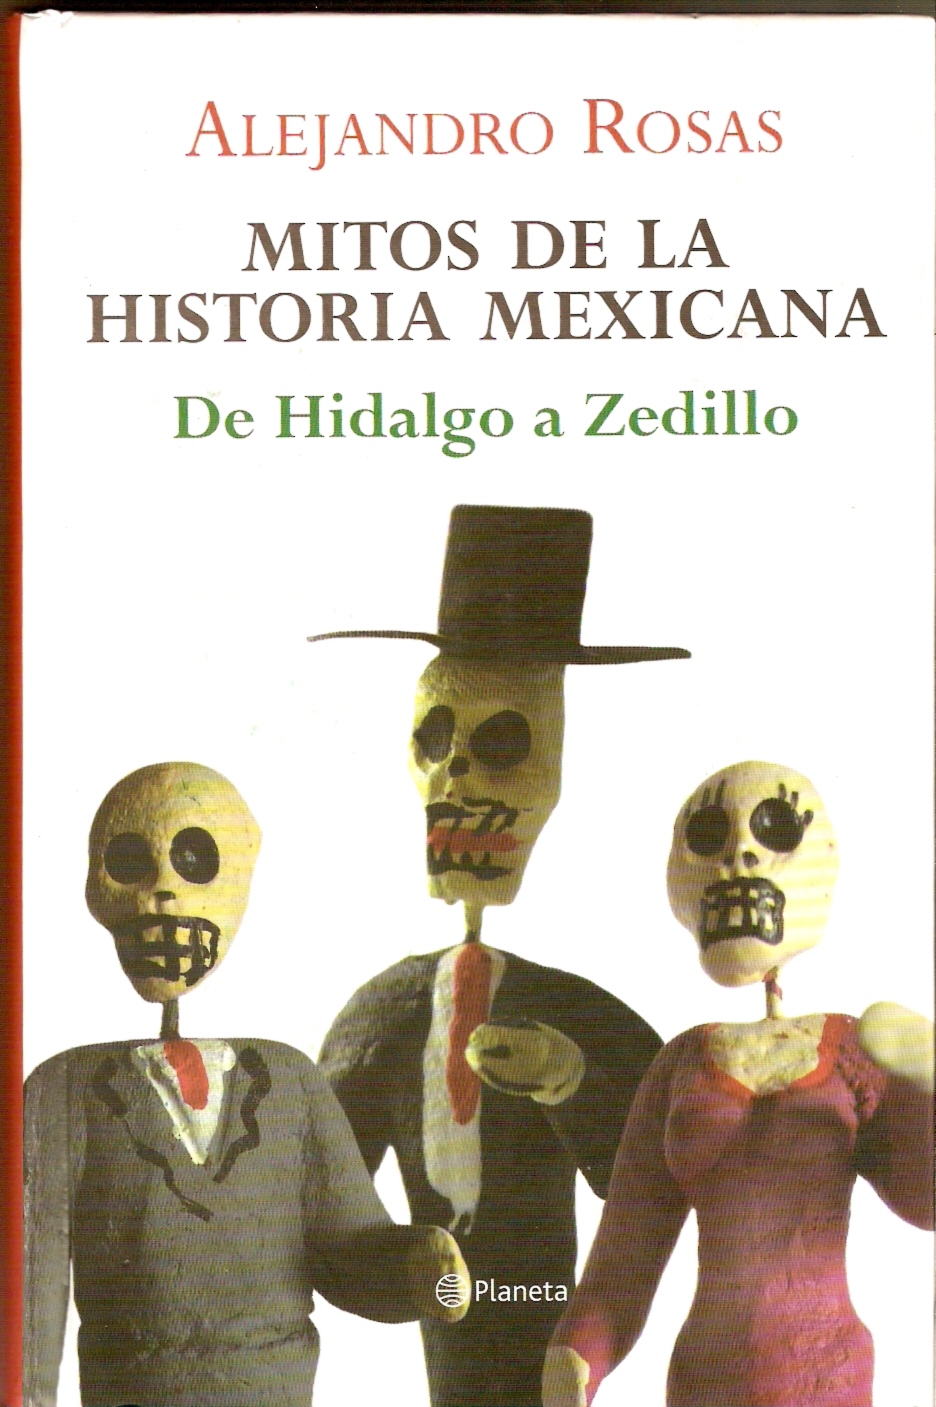 [Mitos+de+la+historia+mexicana.jpg]